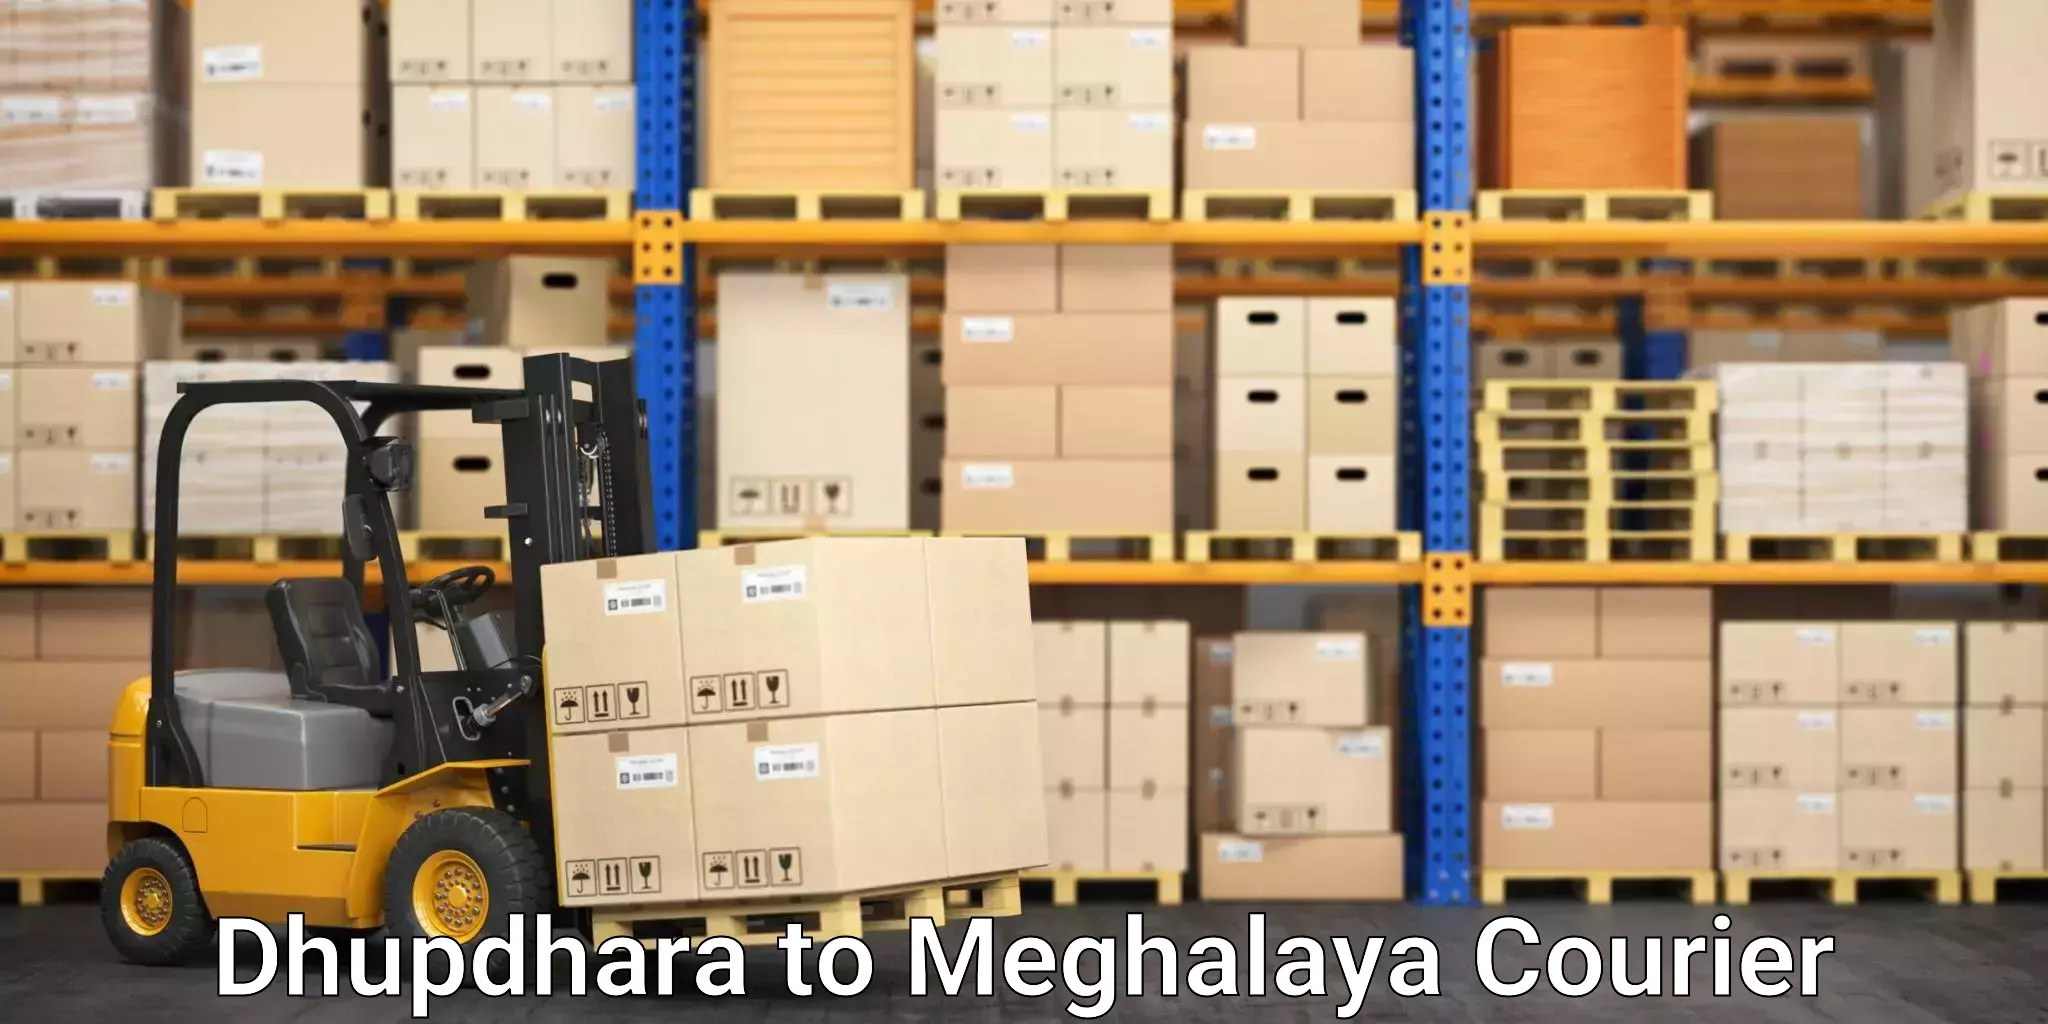 Efficient parcel tracking Dhupdhara to Meghalaya